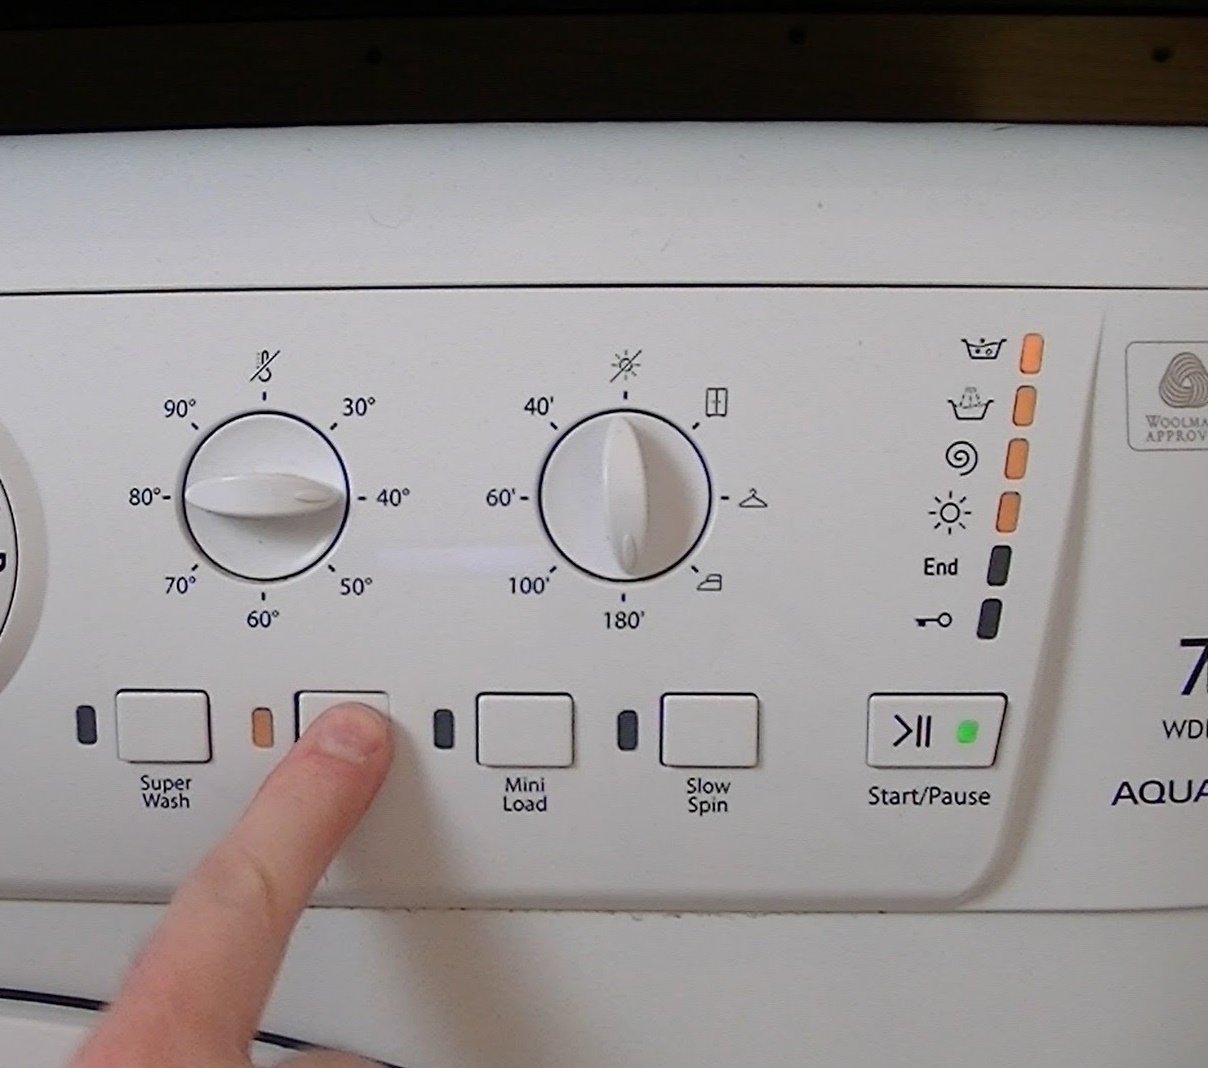 Типичные ошибки при эксплуатации стиральных машин, которые могут привести к поломкам.